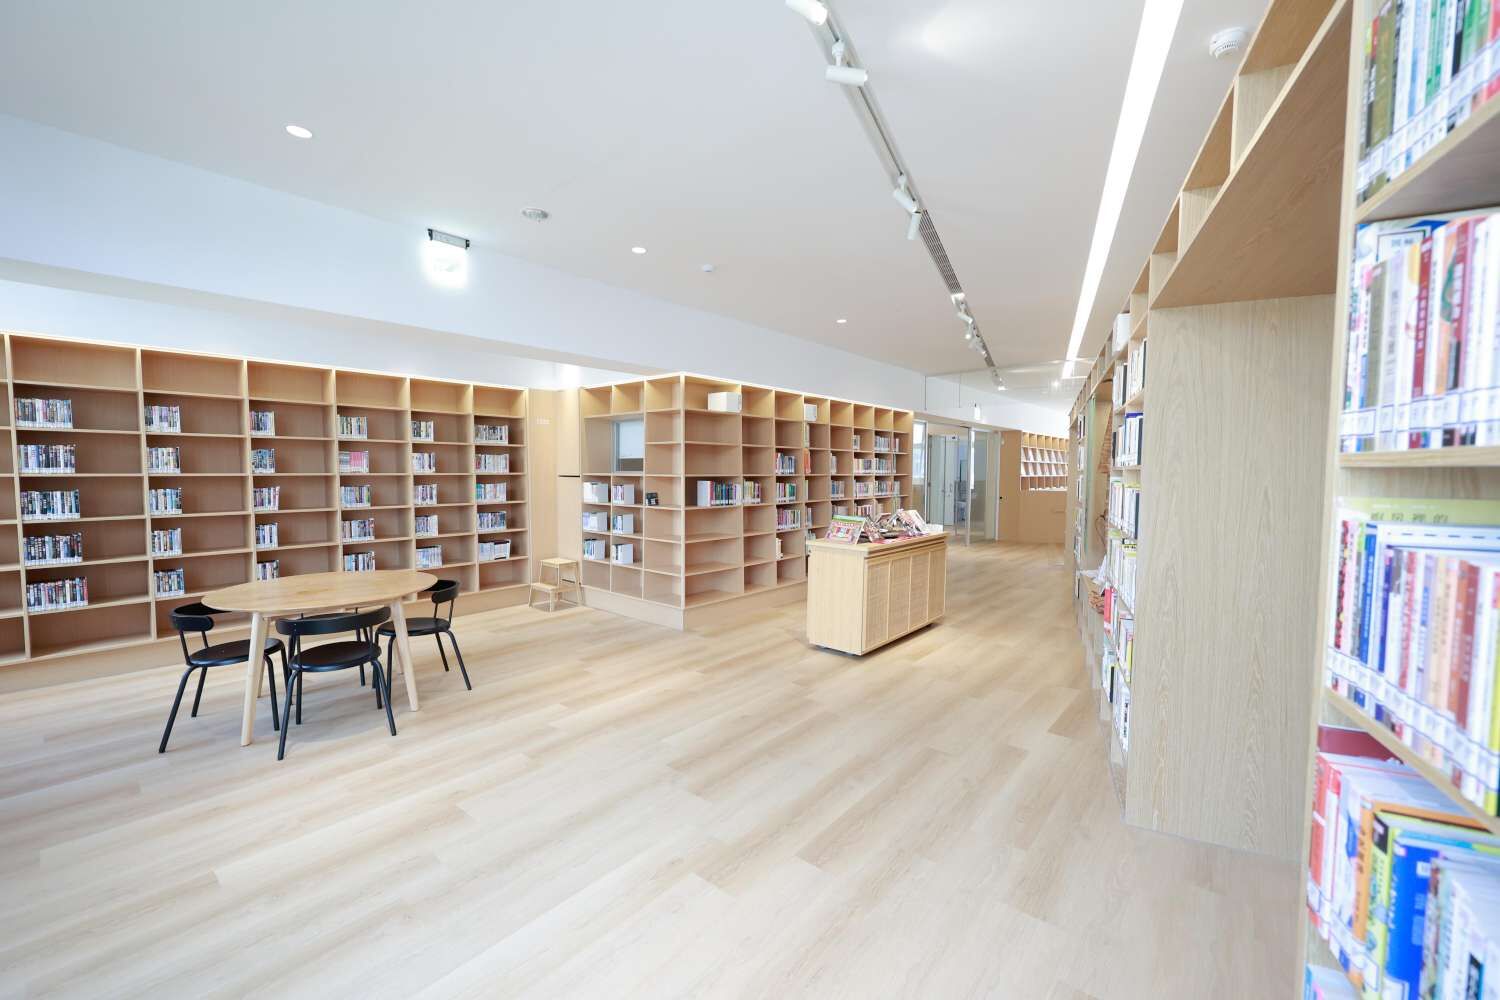 關東分館設計上採用客家工藝常見的竹藤材質，打造客家文化新據點。